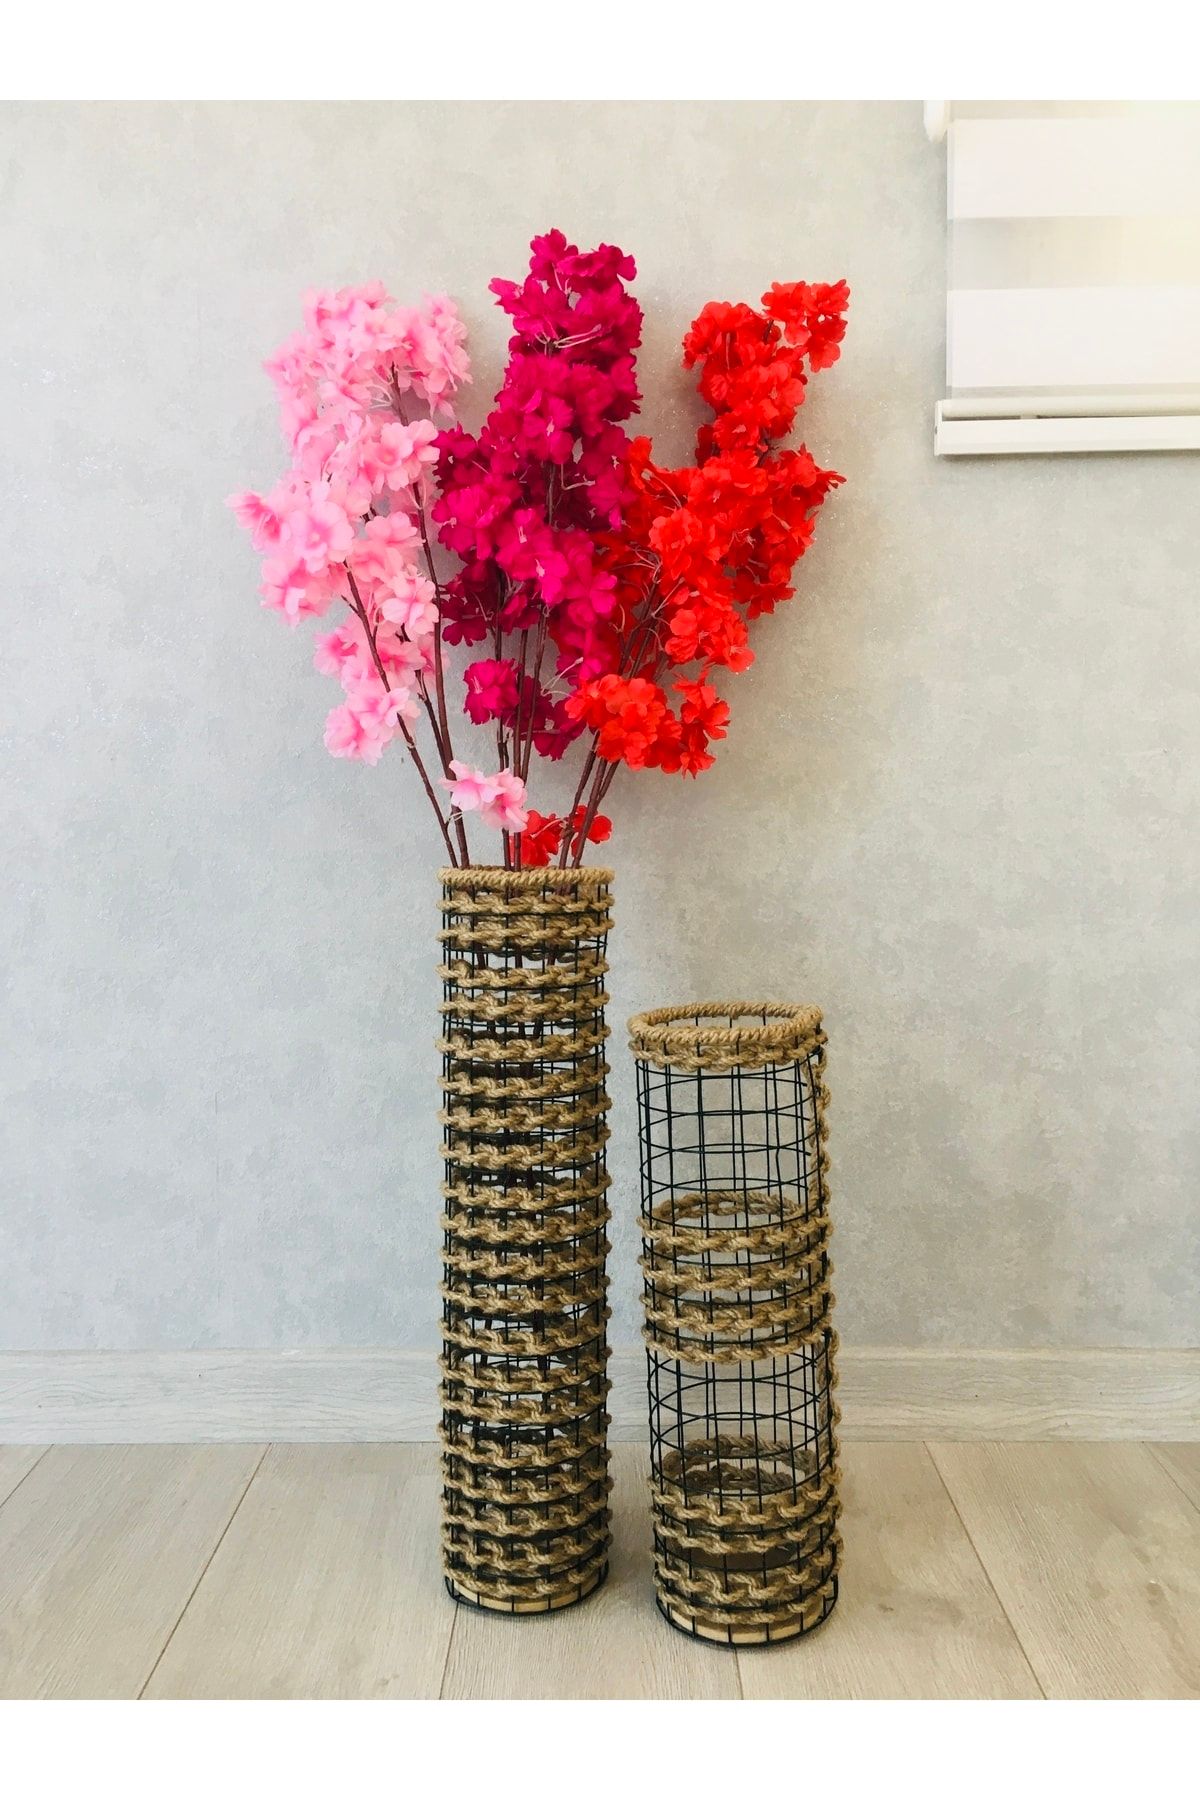 Asenya Hasır Örgü Vazo 2 Li Set 50 Cm Ve 40 Cm Çiçeklik Yapay Çiçek Vazosu Dekoratif Saksı